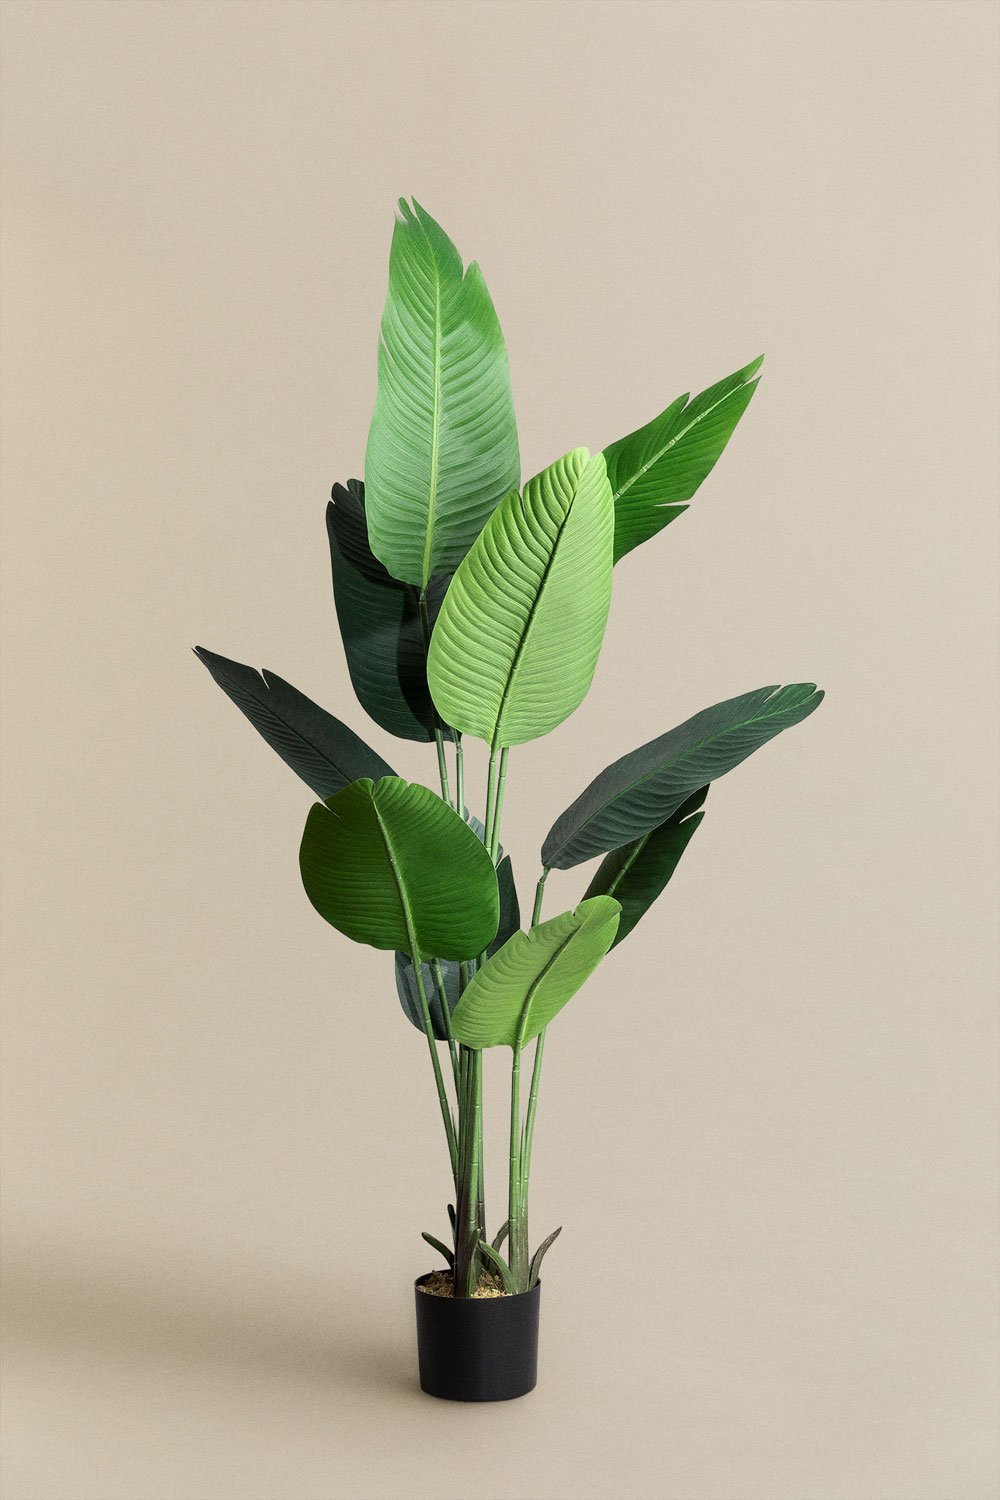 Pianta decorativa artificiale Bananera 160 cm, immagine della galleria 1